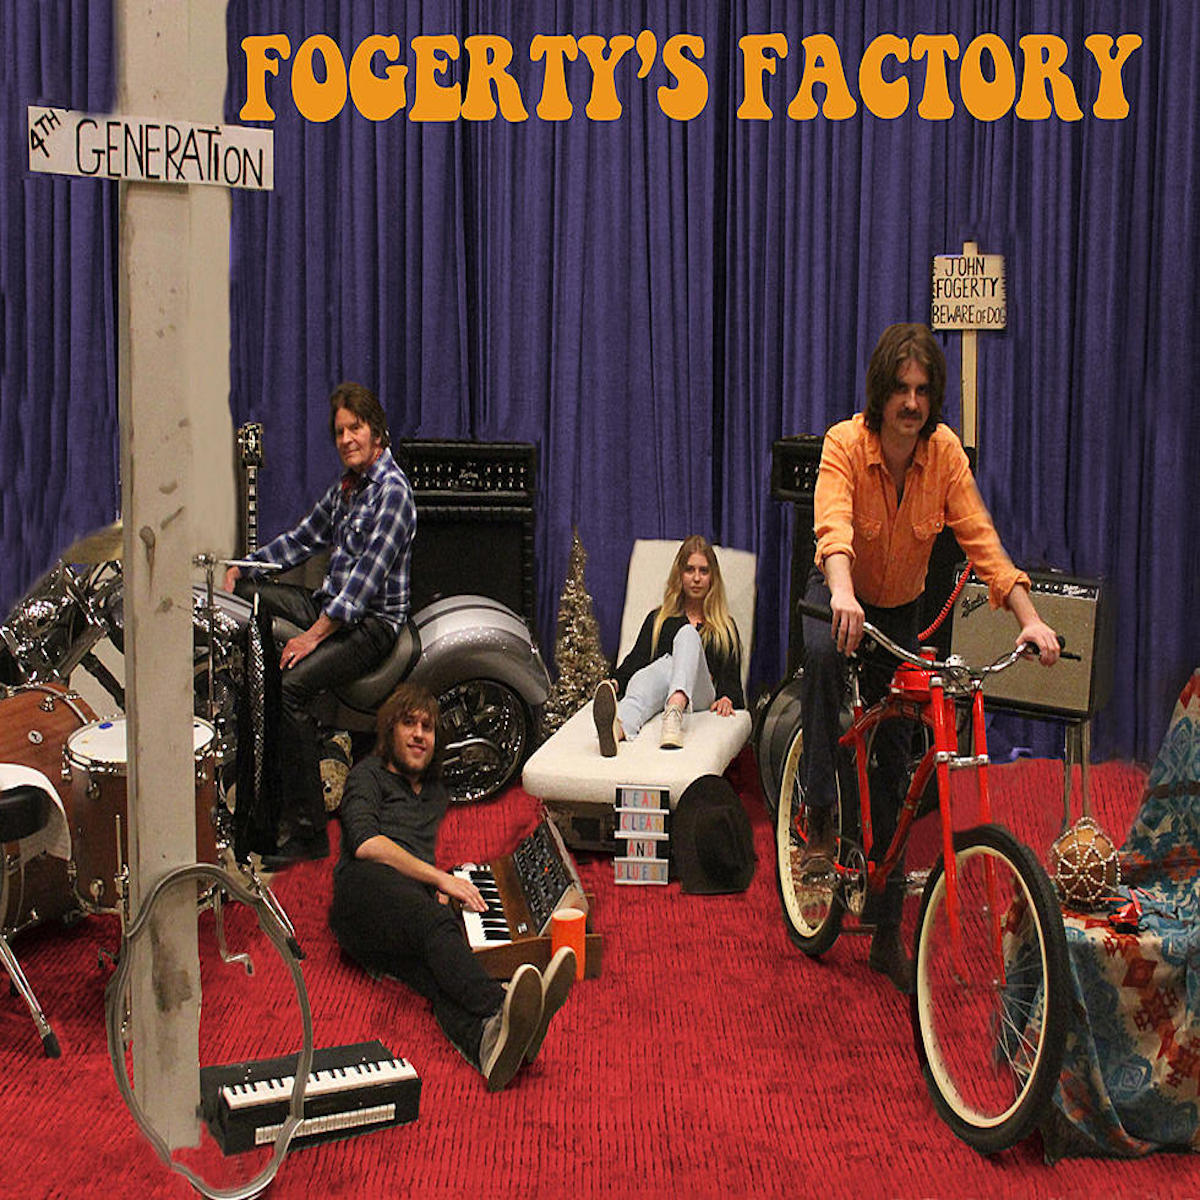 JOHN FOGERTY - Fogerty's Factory - LP - Vinyl